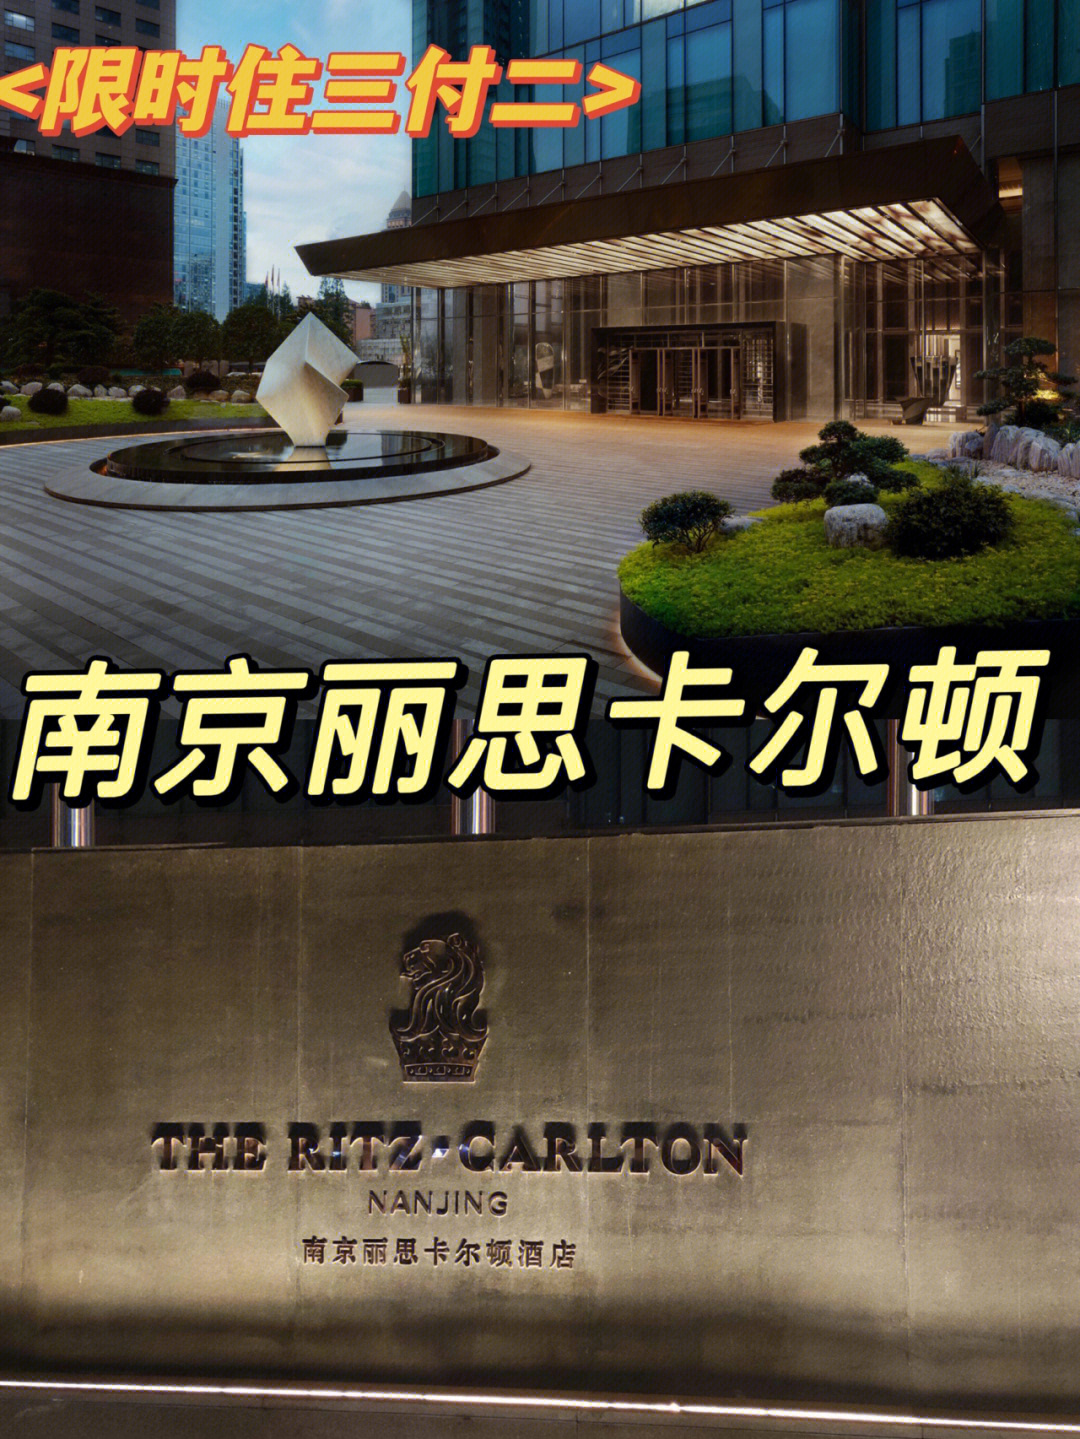 about hotel96南京丽思卡尔顿酒店位于南京新街口繁华商圈的德基